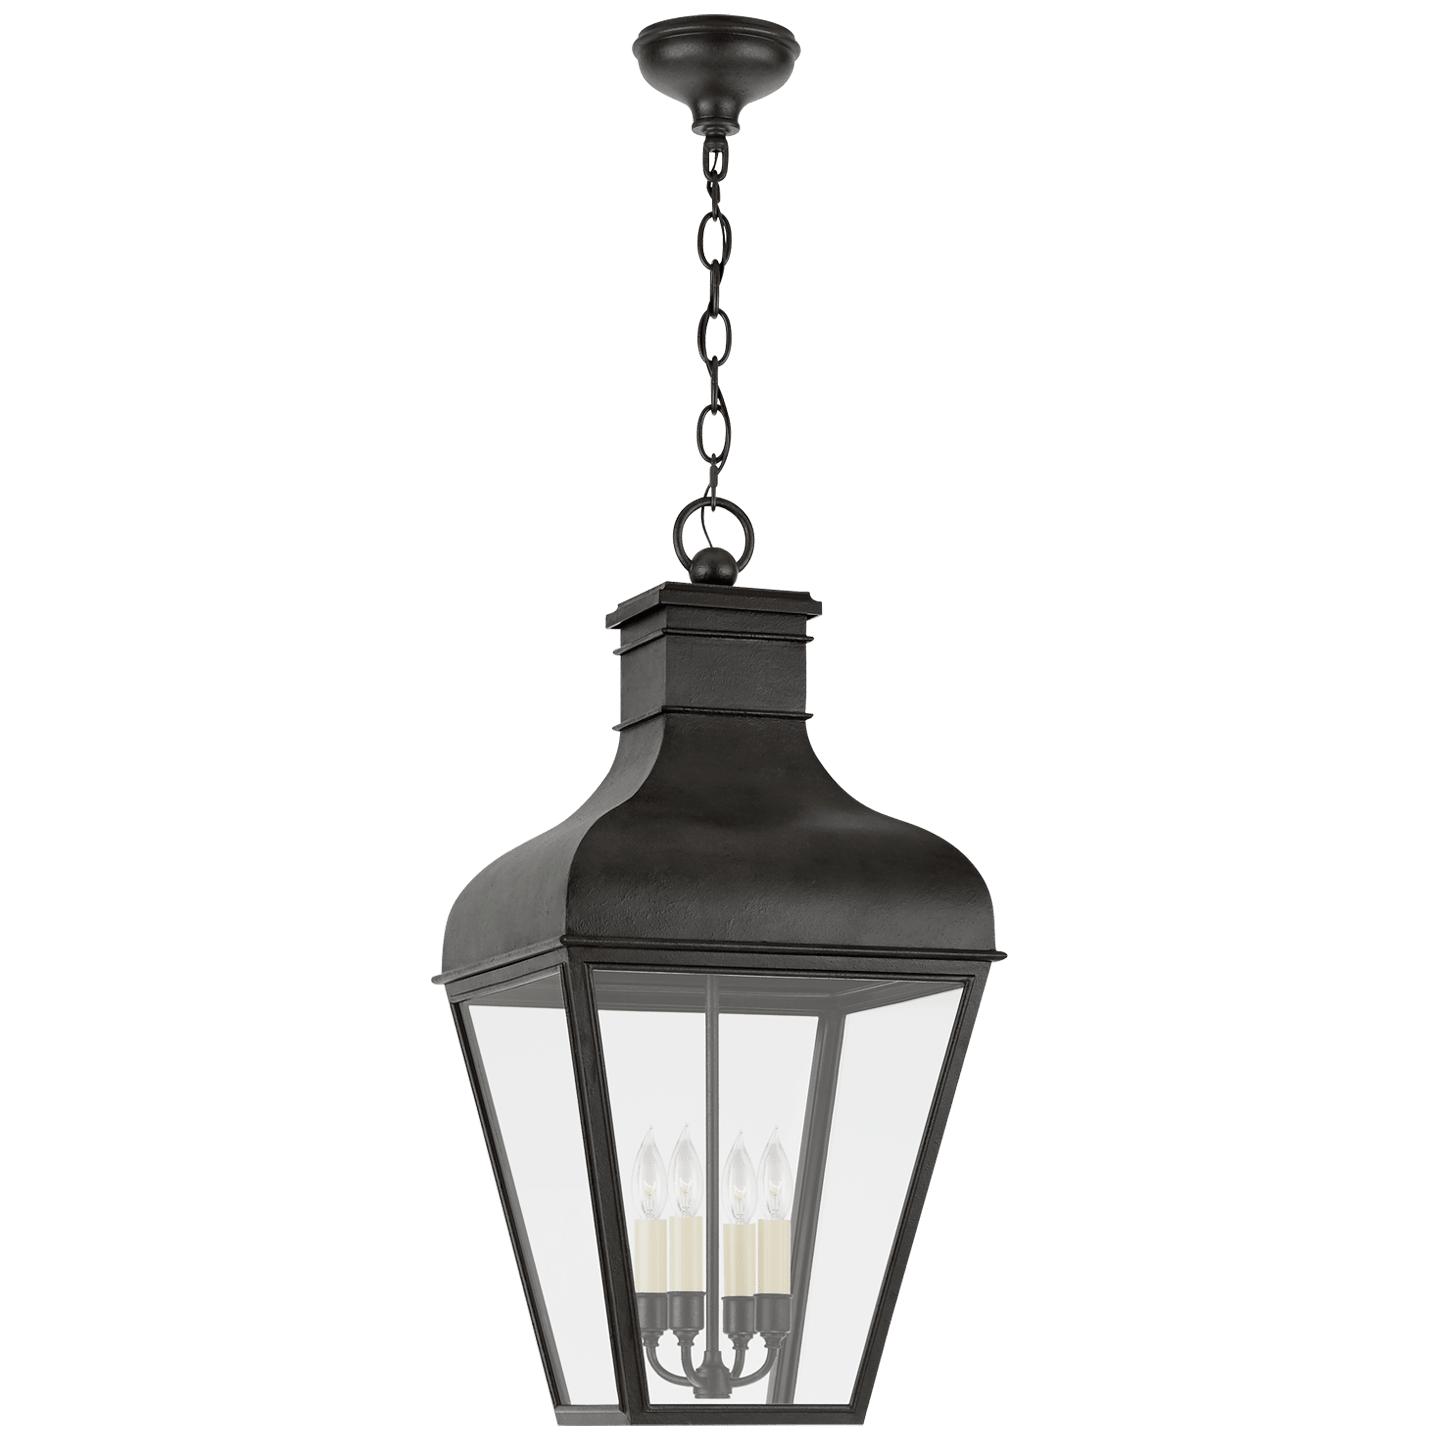 Купить Подвесной светильник Fremont Large Hanging Lantern в интернет-магазине roooms.ru